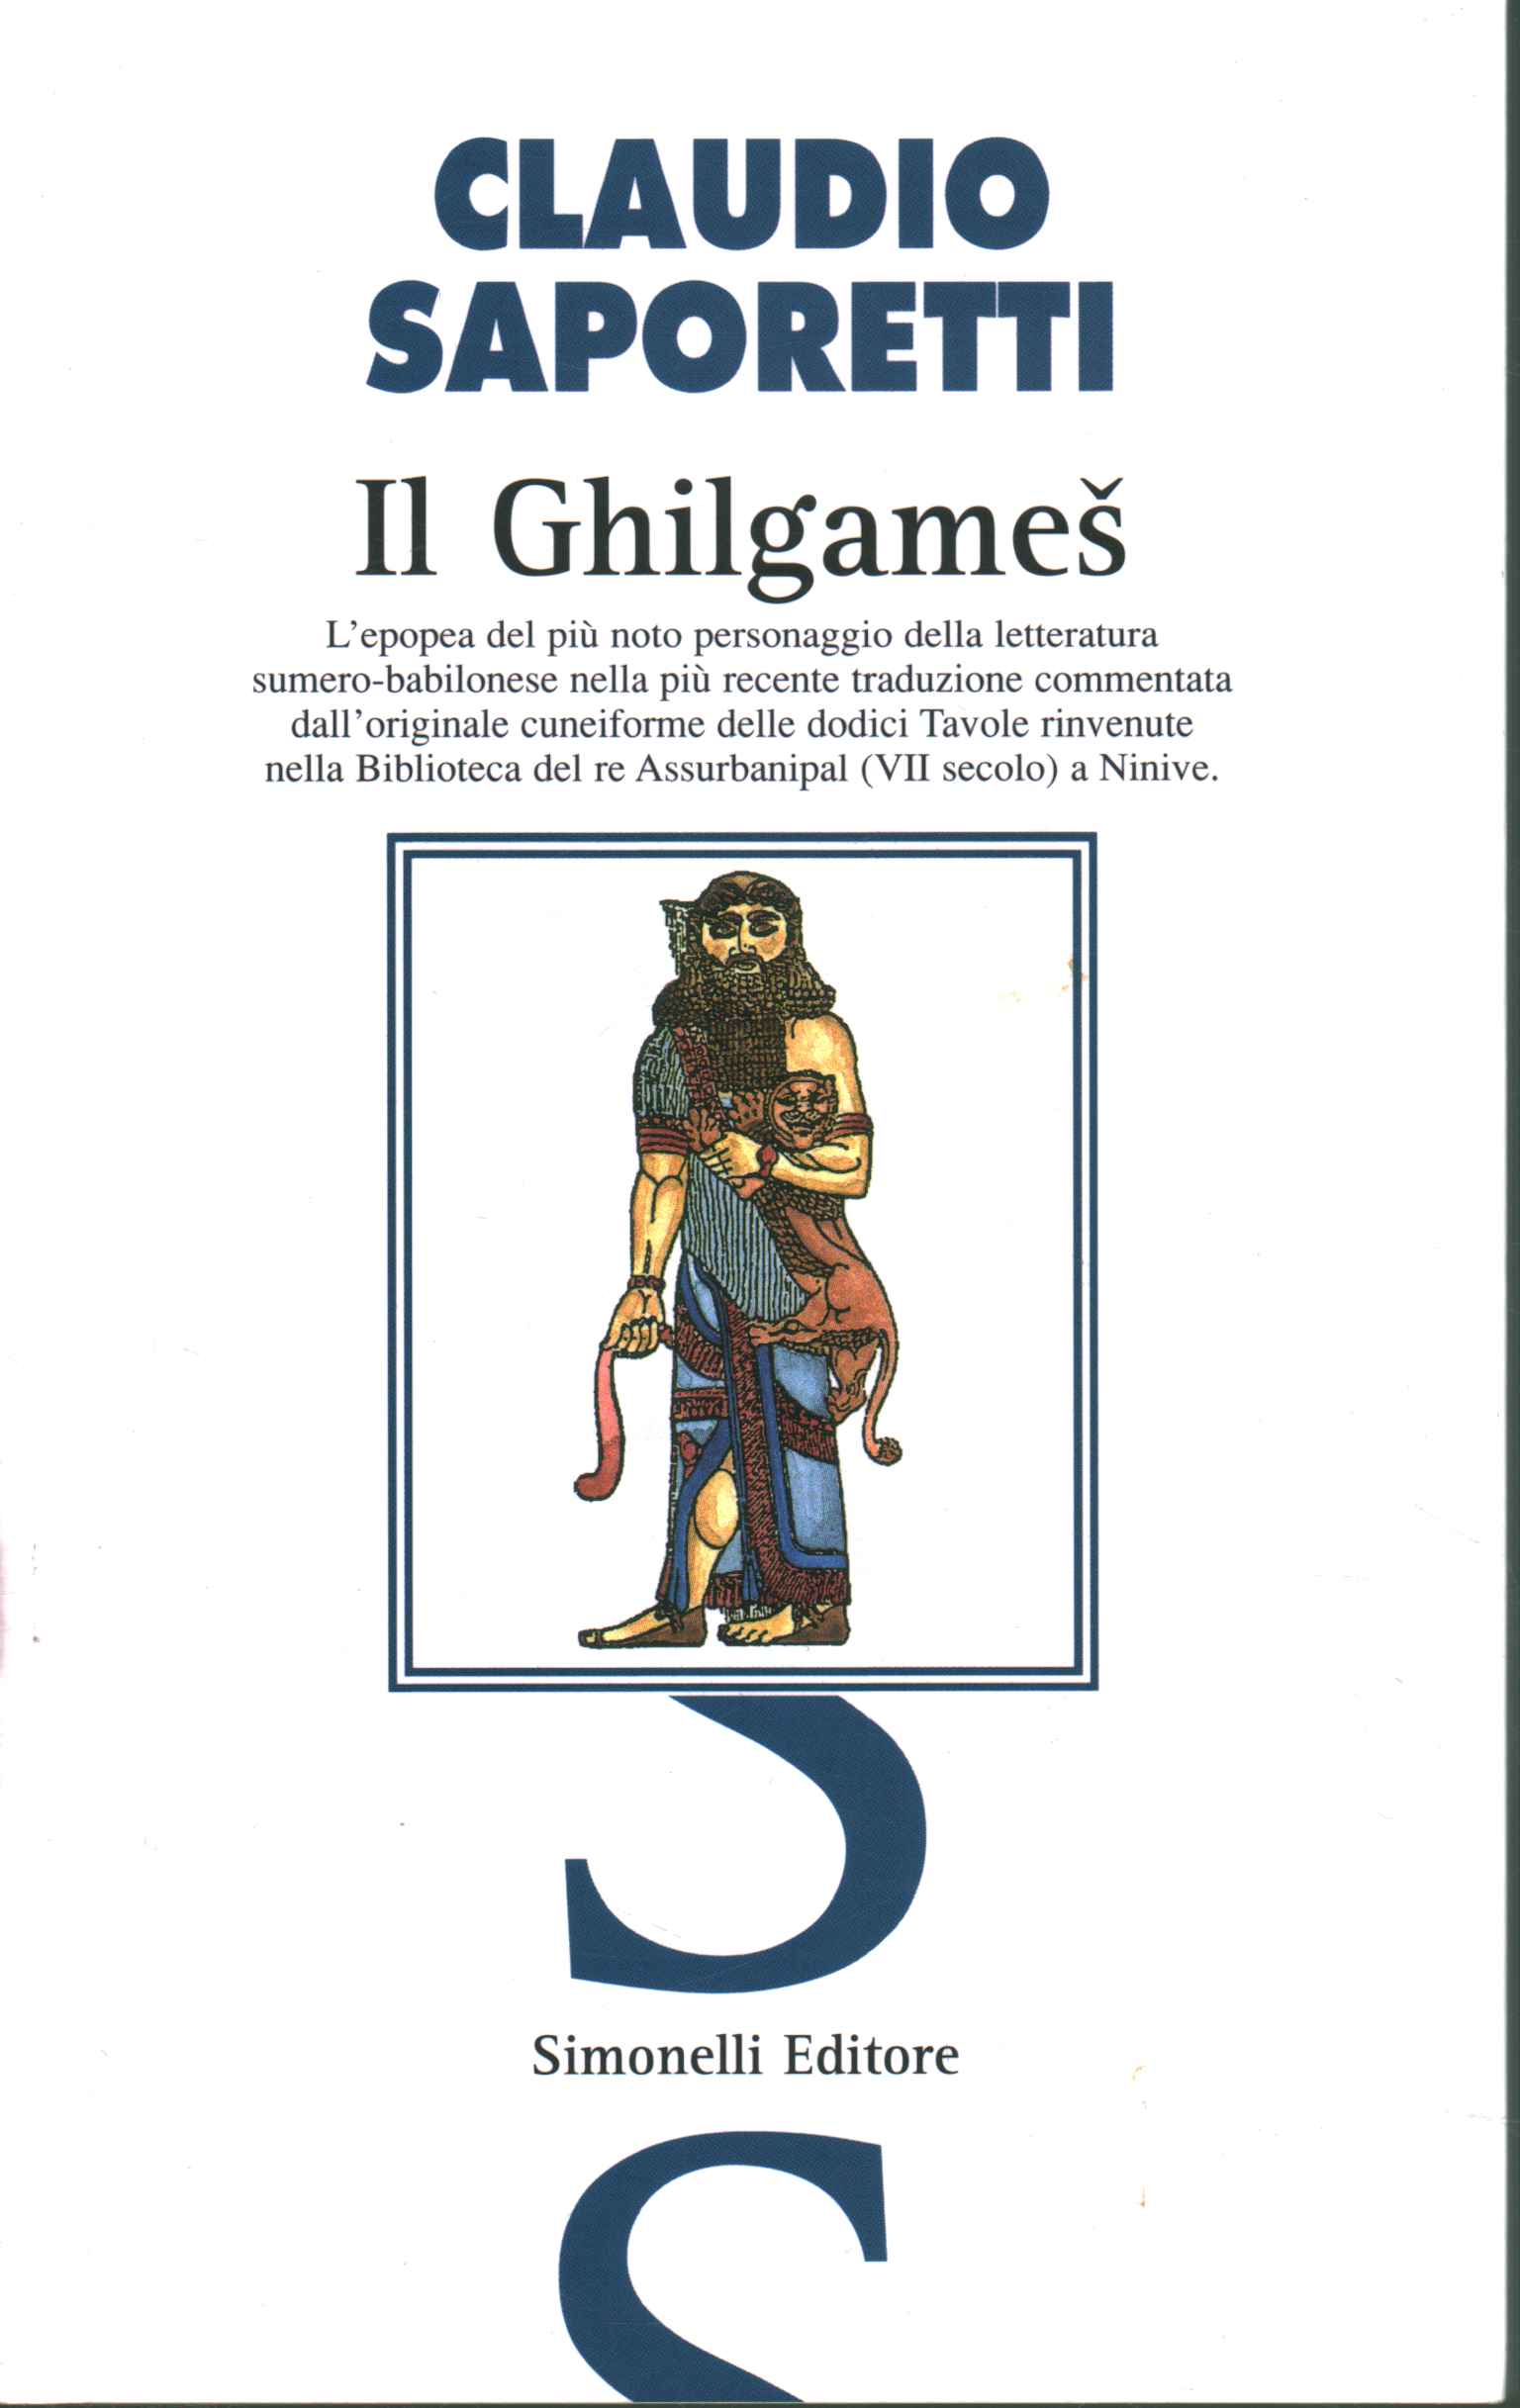 Der Gilgamesch